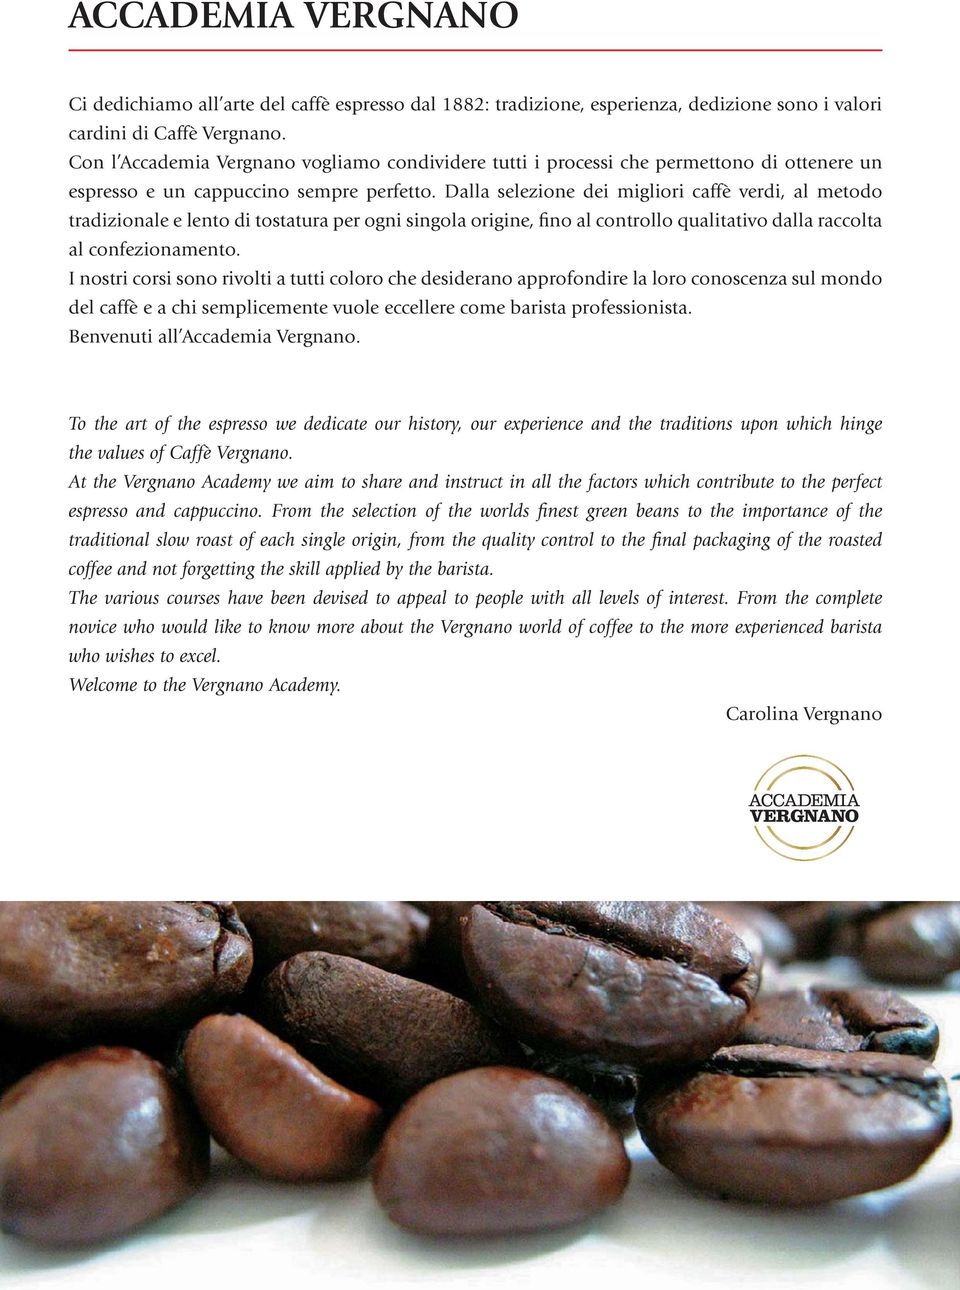 Dalla selezione dei migliori caffè verdi, al metodo tradizionale e lento di tostatura per ogni singola origine, fino al controllo qualitativo dalla raccolta al confezionamento.